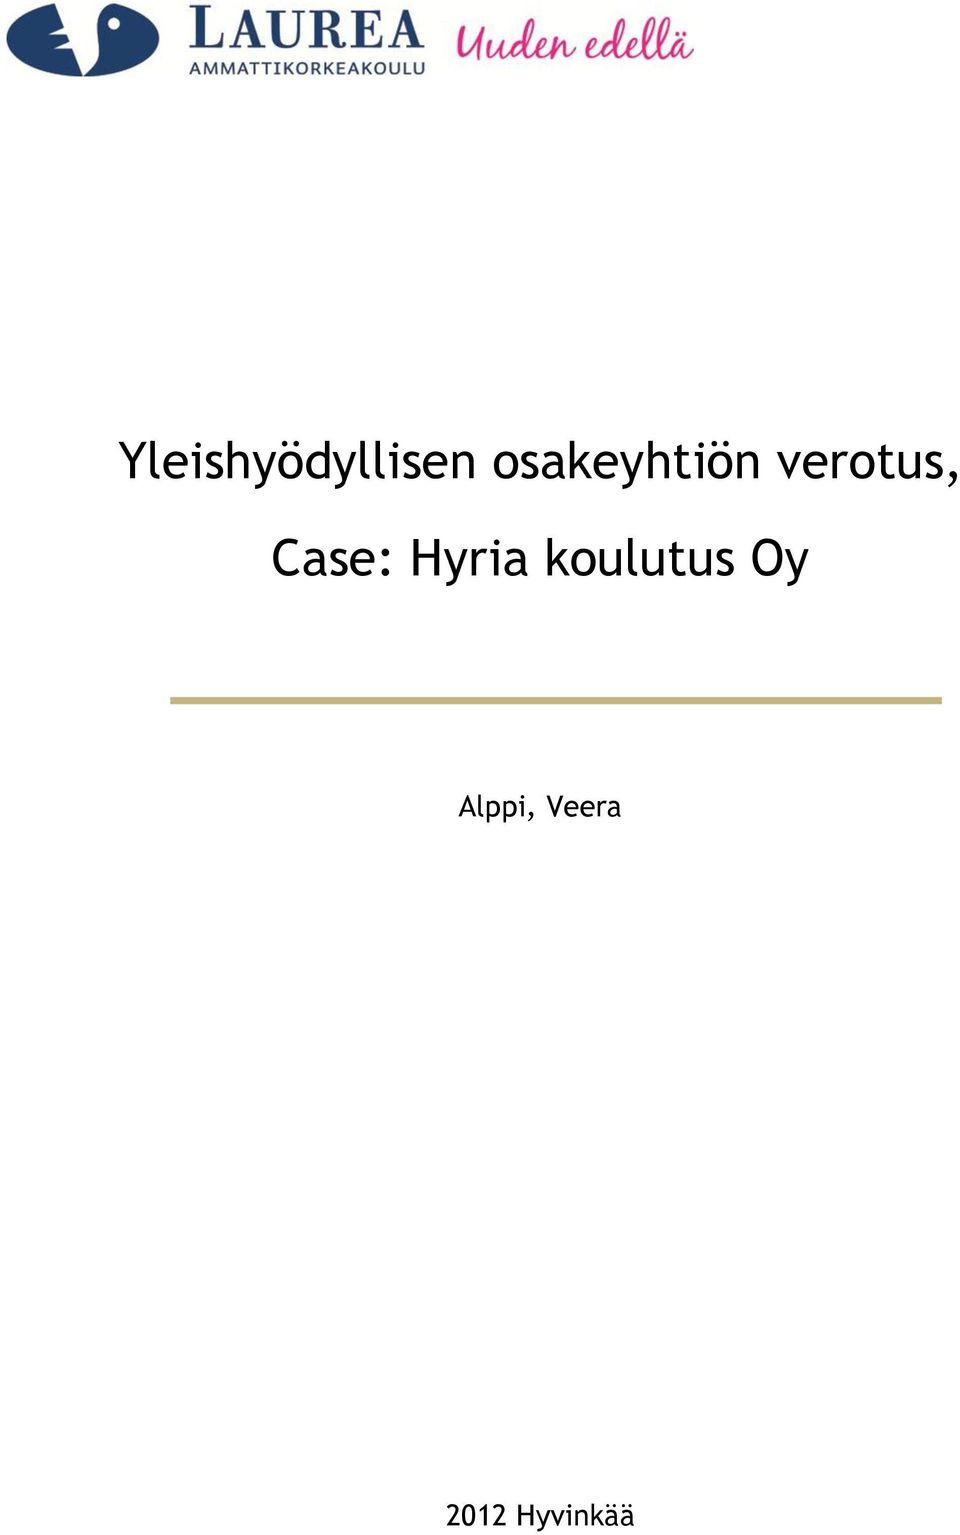 Case: Hyria koulutus